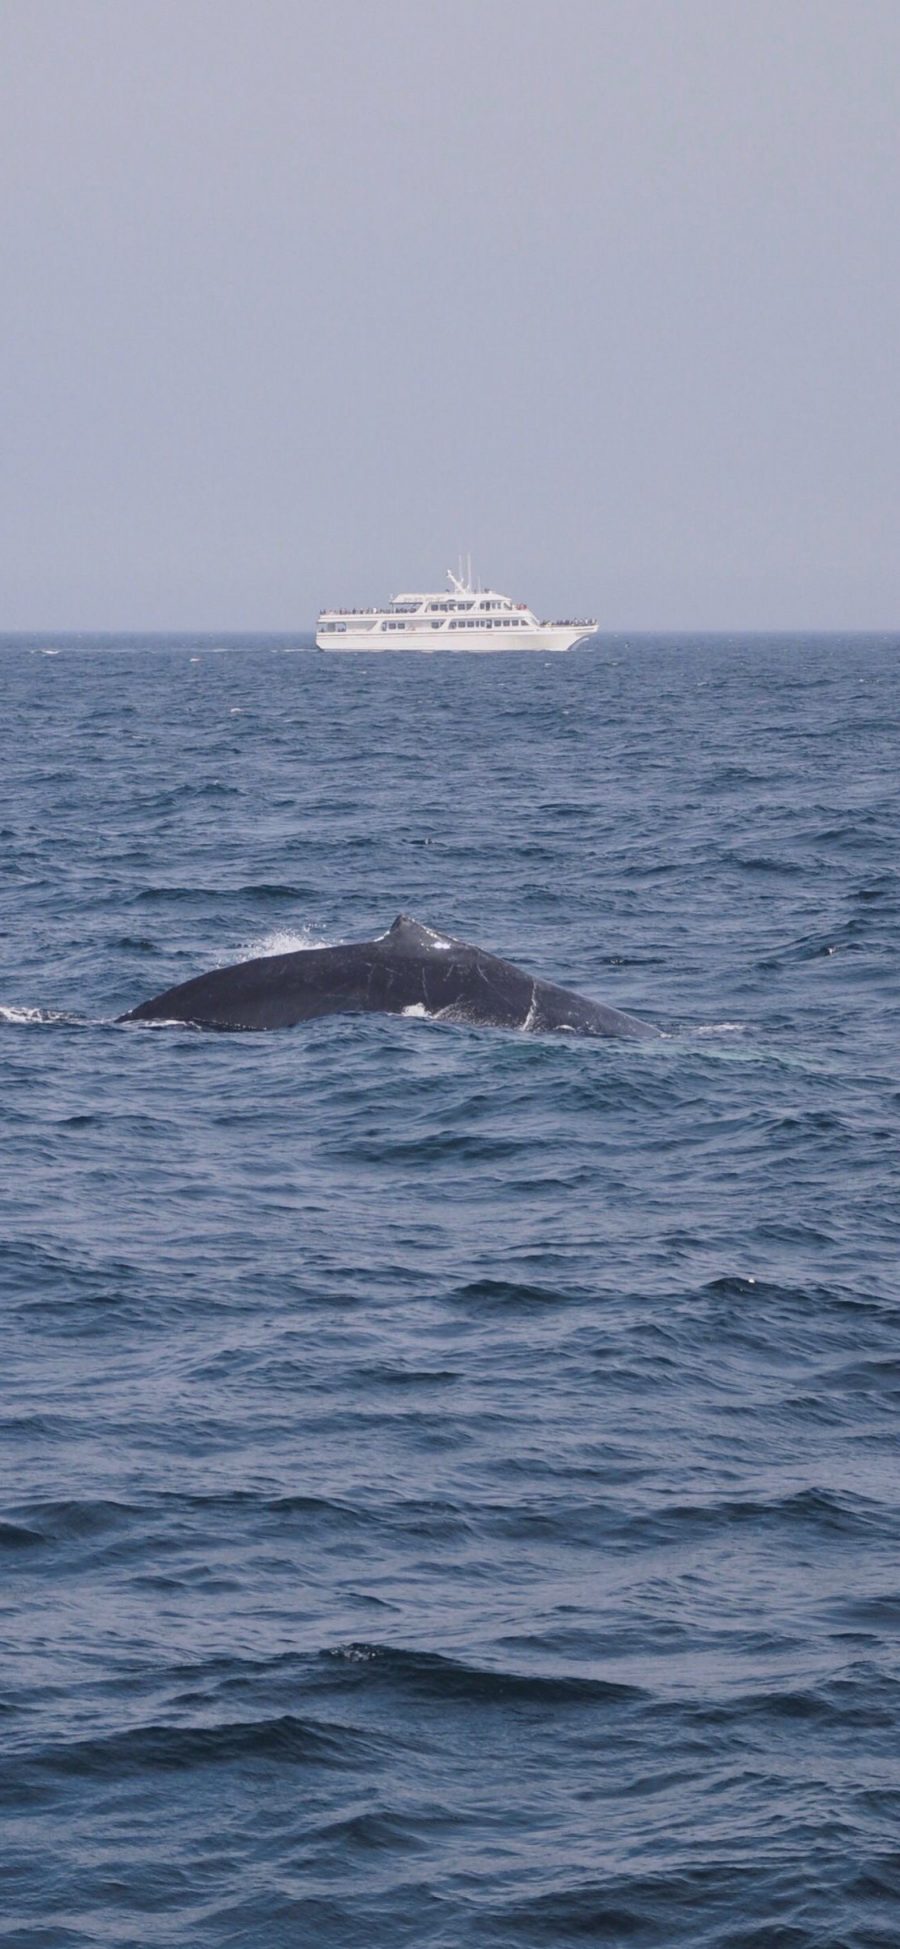 [2436×1125]鲸 大海 游轮 海洋生物 海面 苹果手机壁纸图片